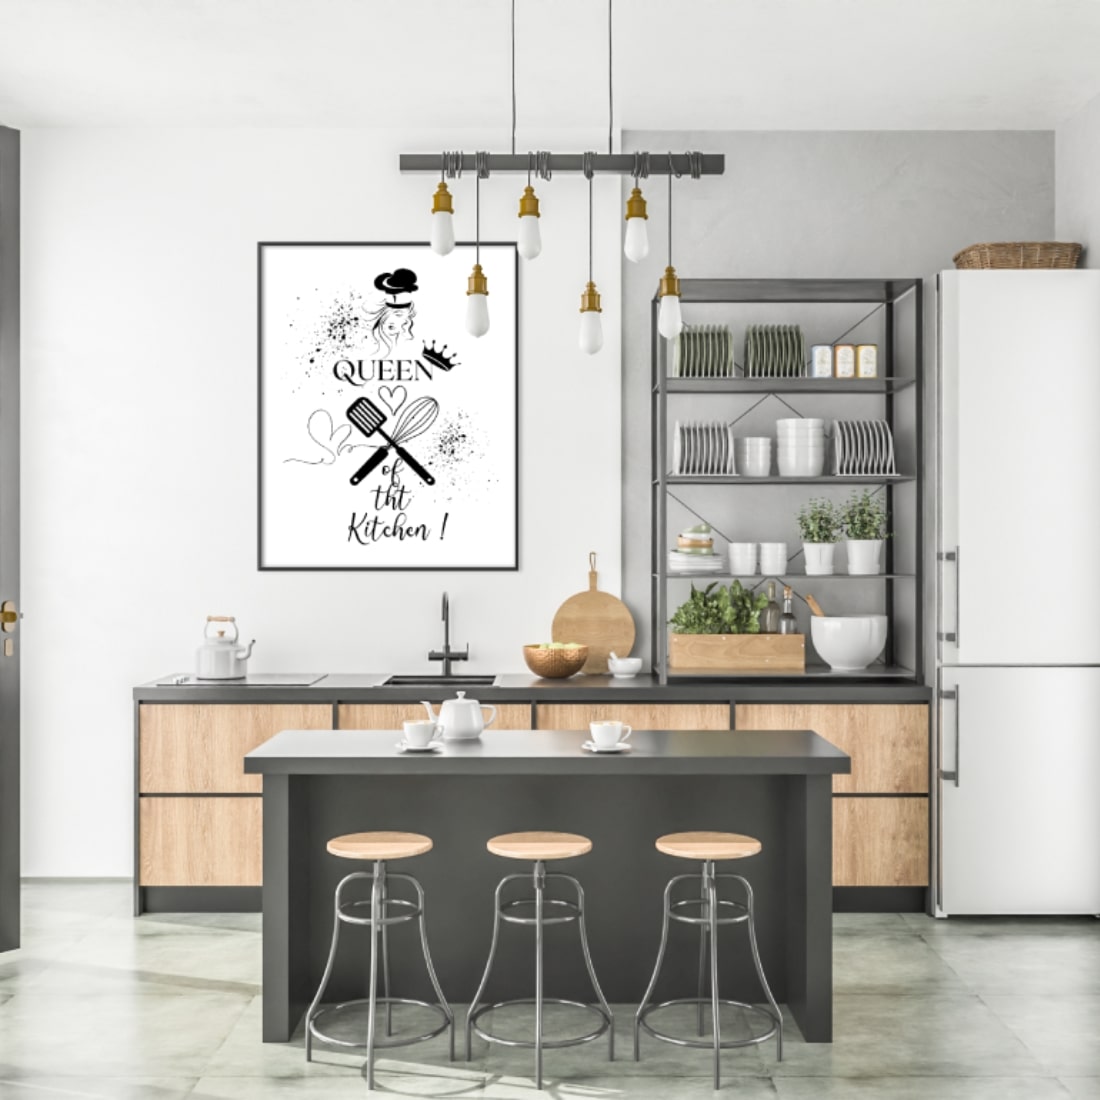 Modern stylish kitchen interior.